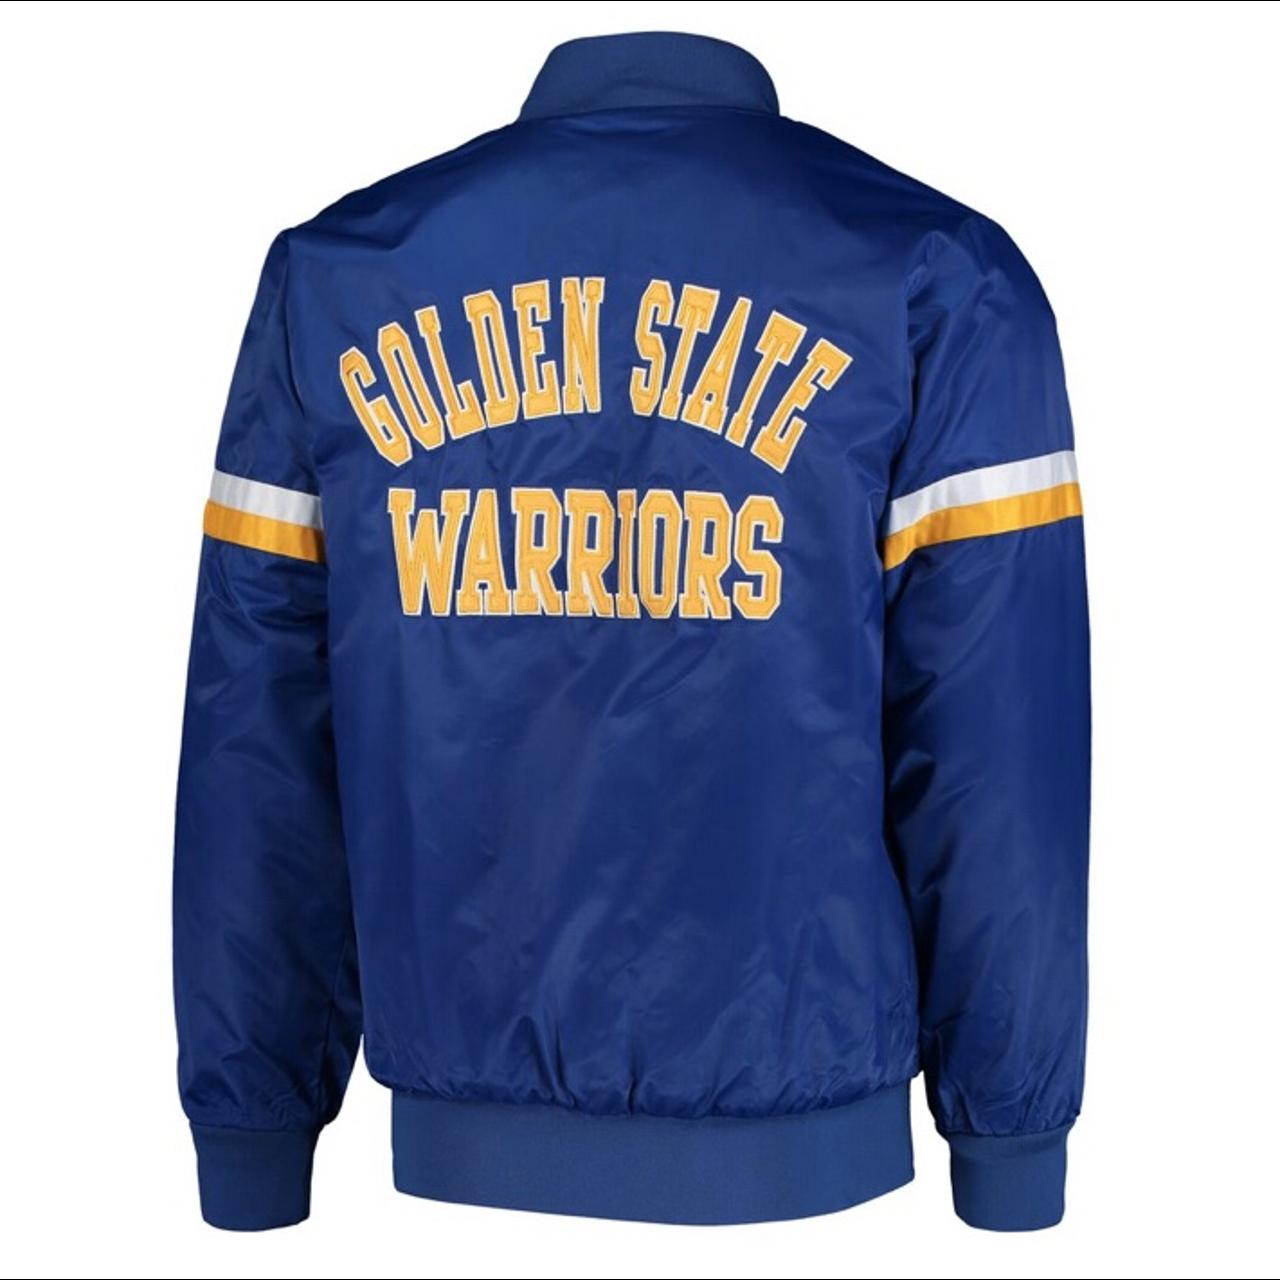 Golden State Warriors Starter Jacket. Tag Says large - Depop